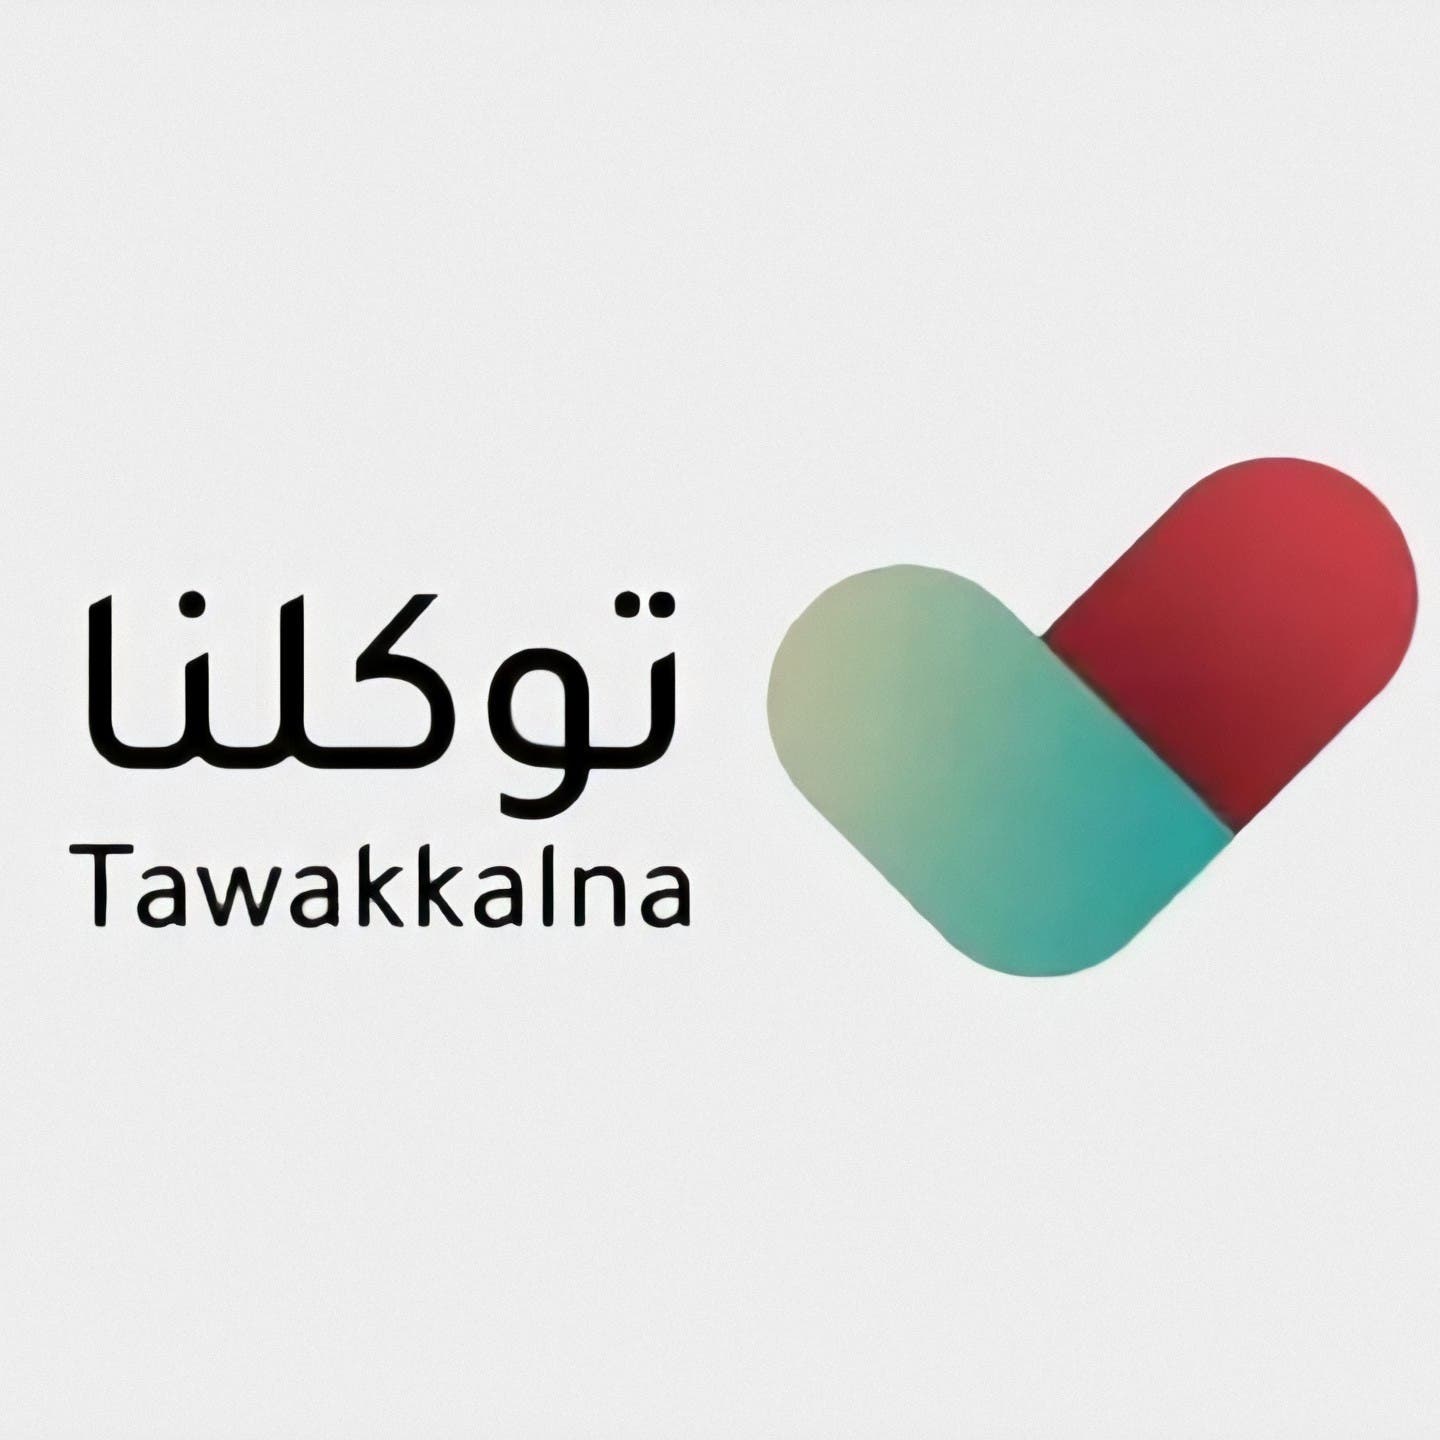  تطبيق "توكلنا" يتجاوز 17 مليون مستخدم بعد 9 أشهر على إطلاقه بالسعودية